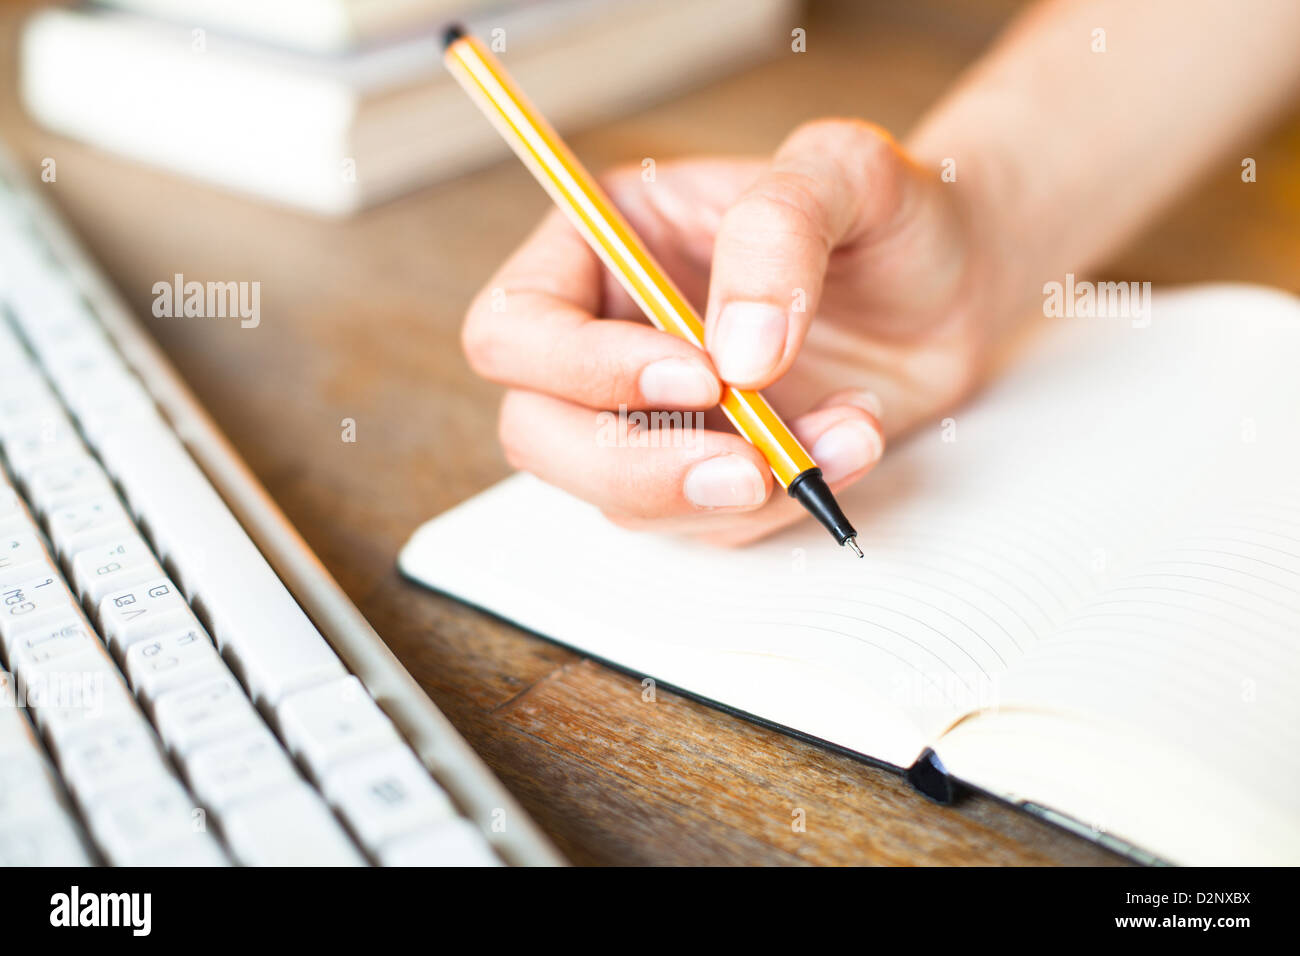 Mani scrive una penna in un notebook, la tastiera del computer e una pila di libri in background Foto Stock